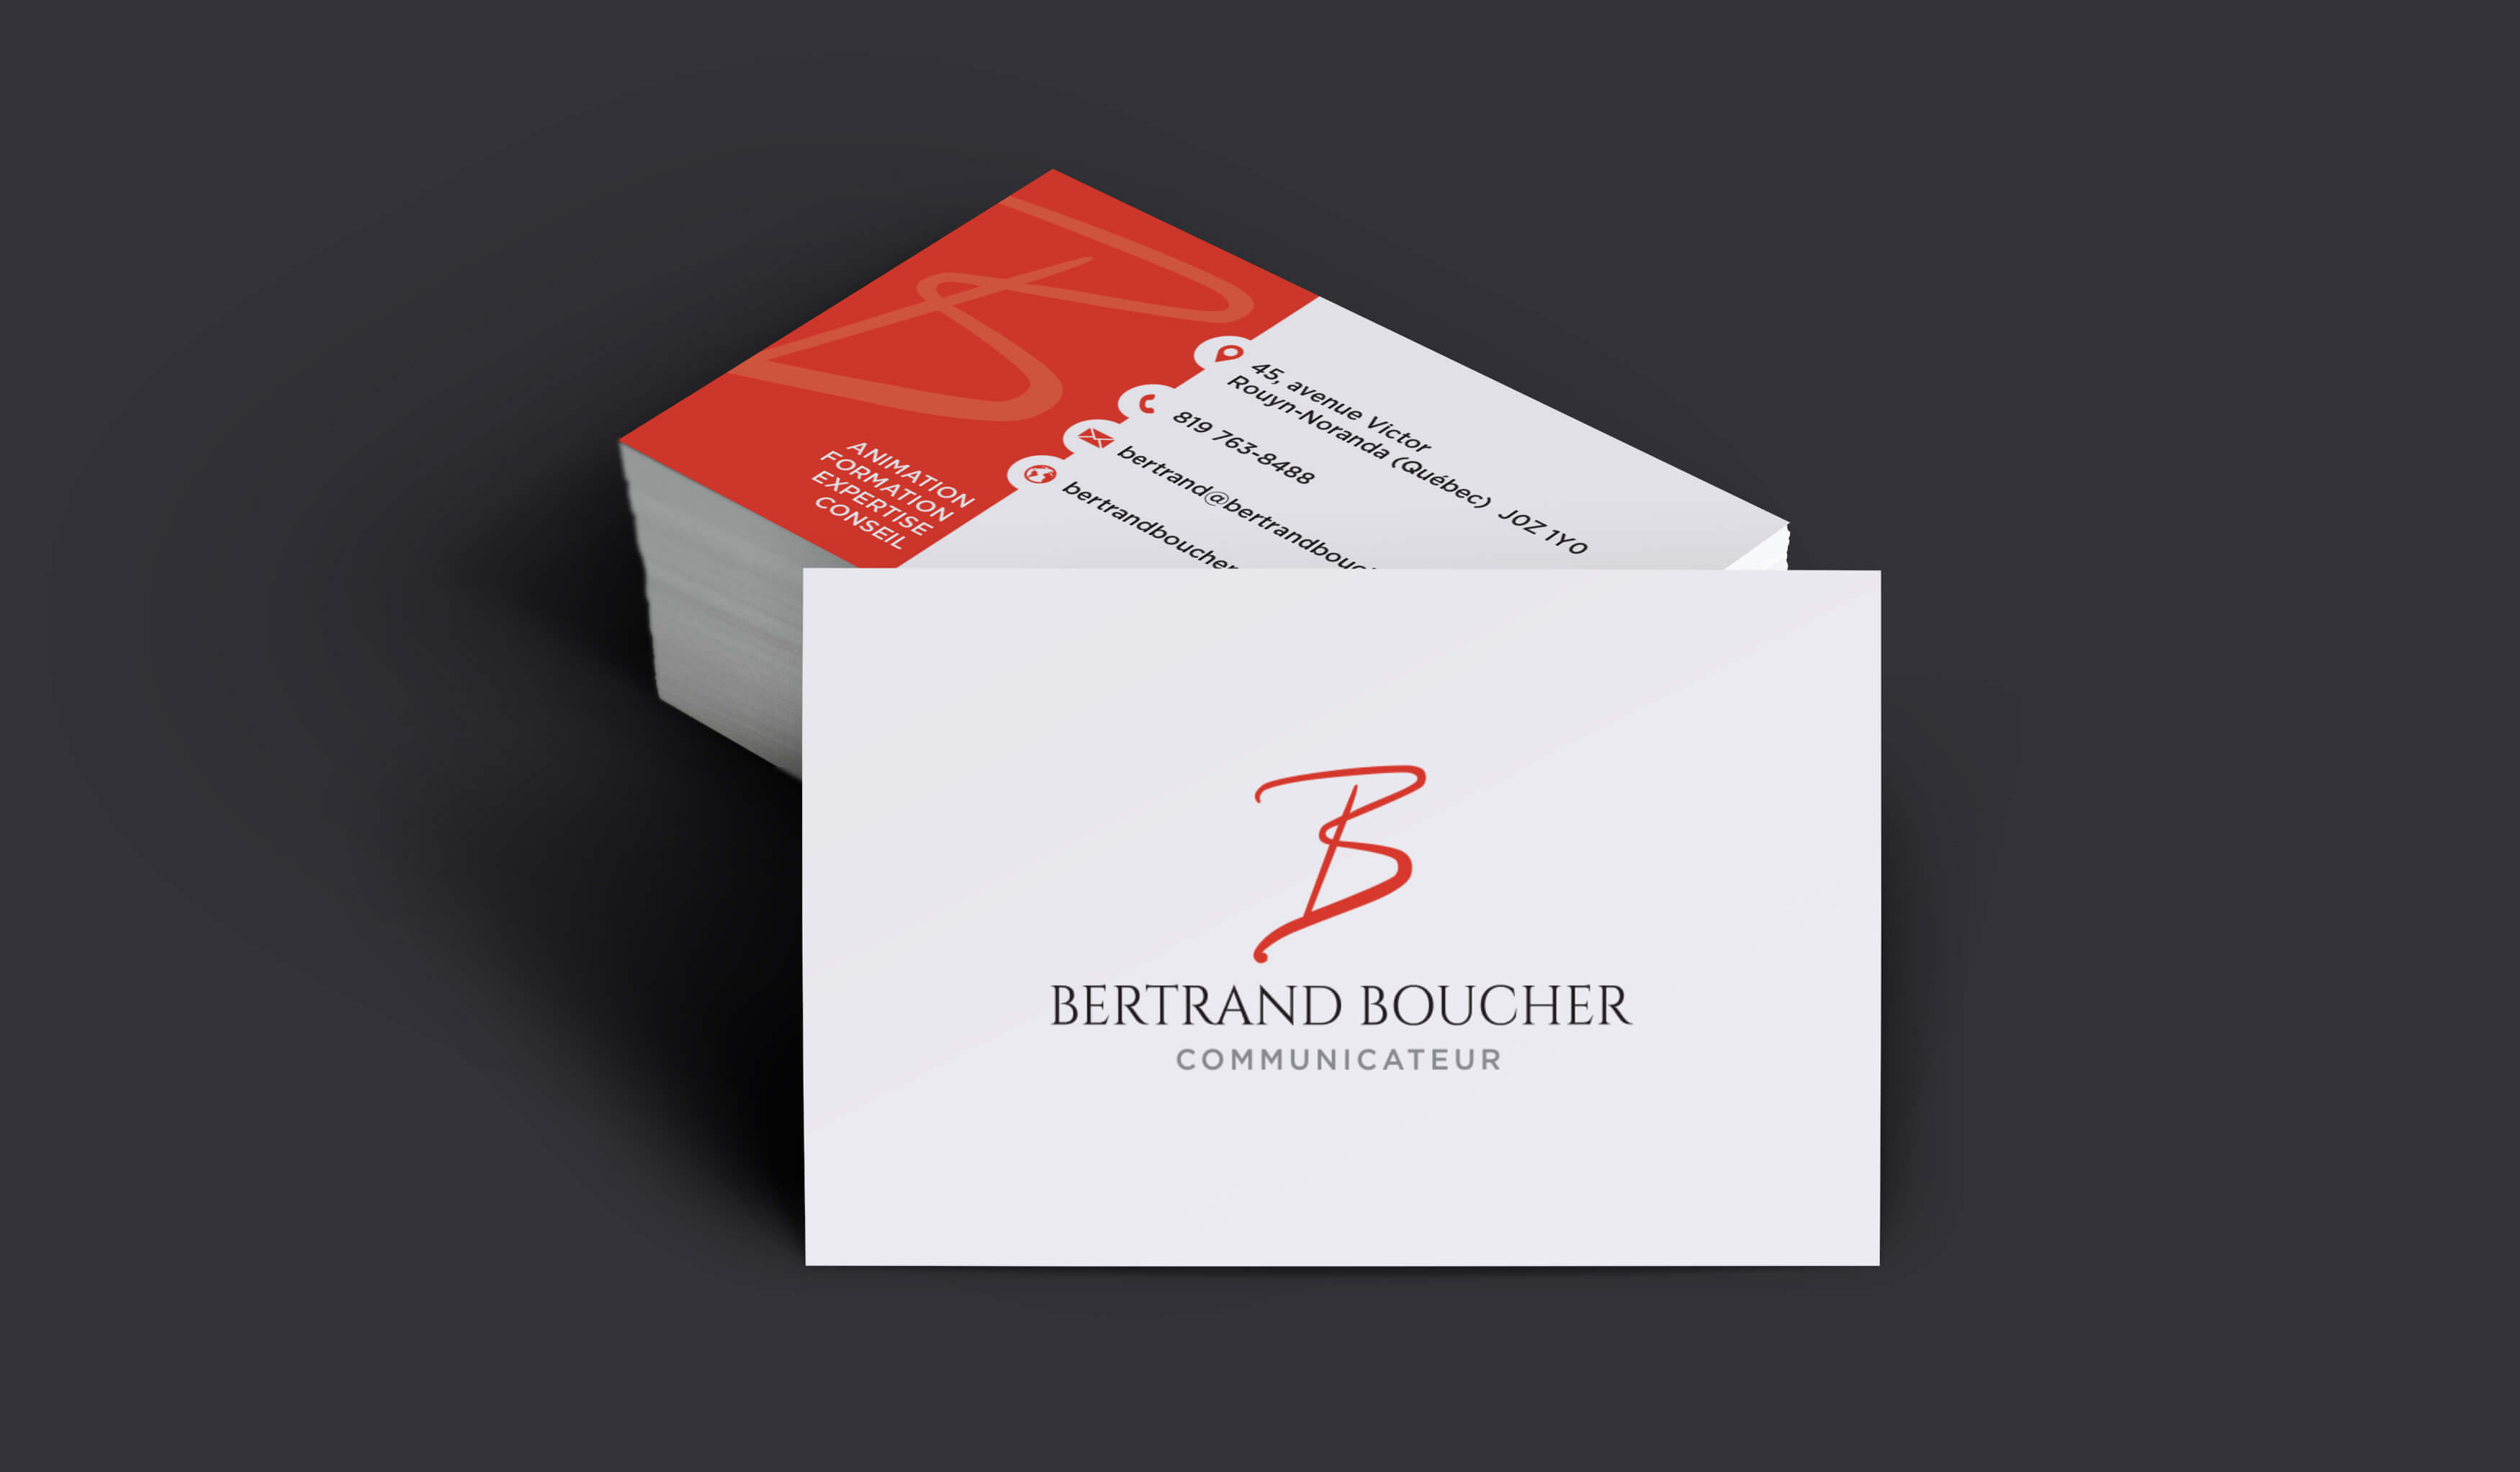 Bertrand Boucher communicateur